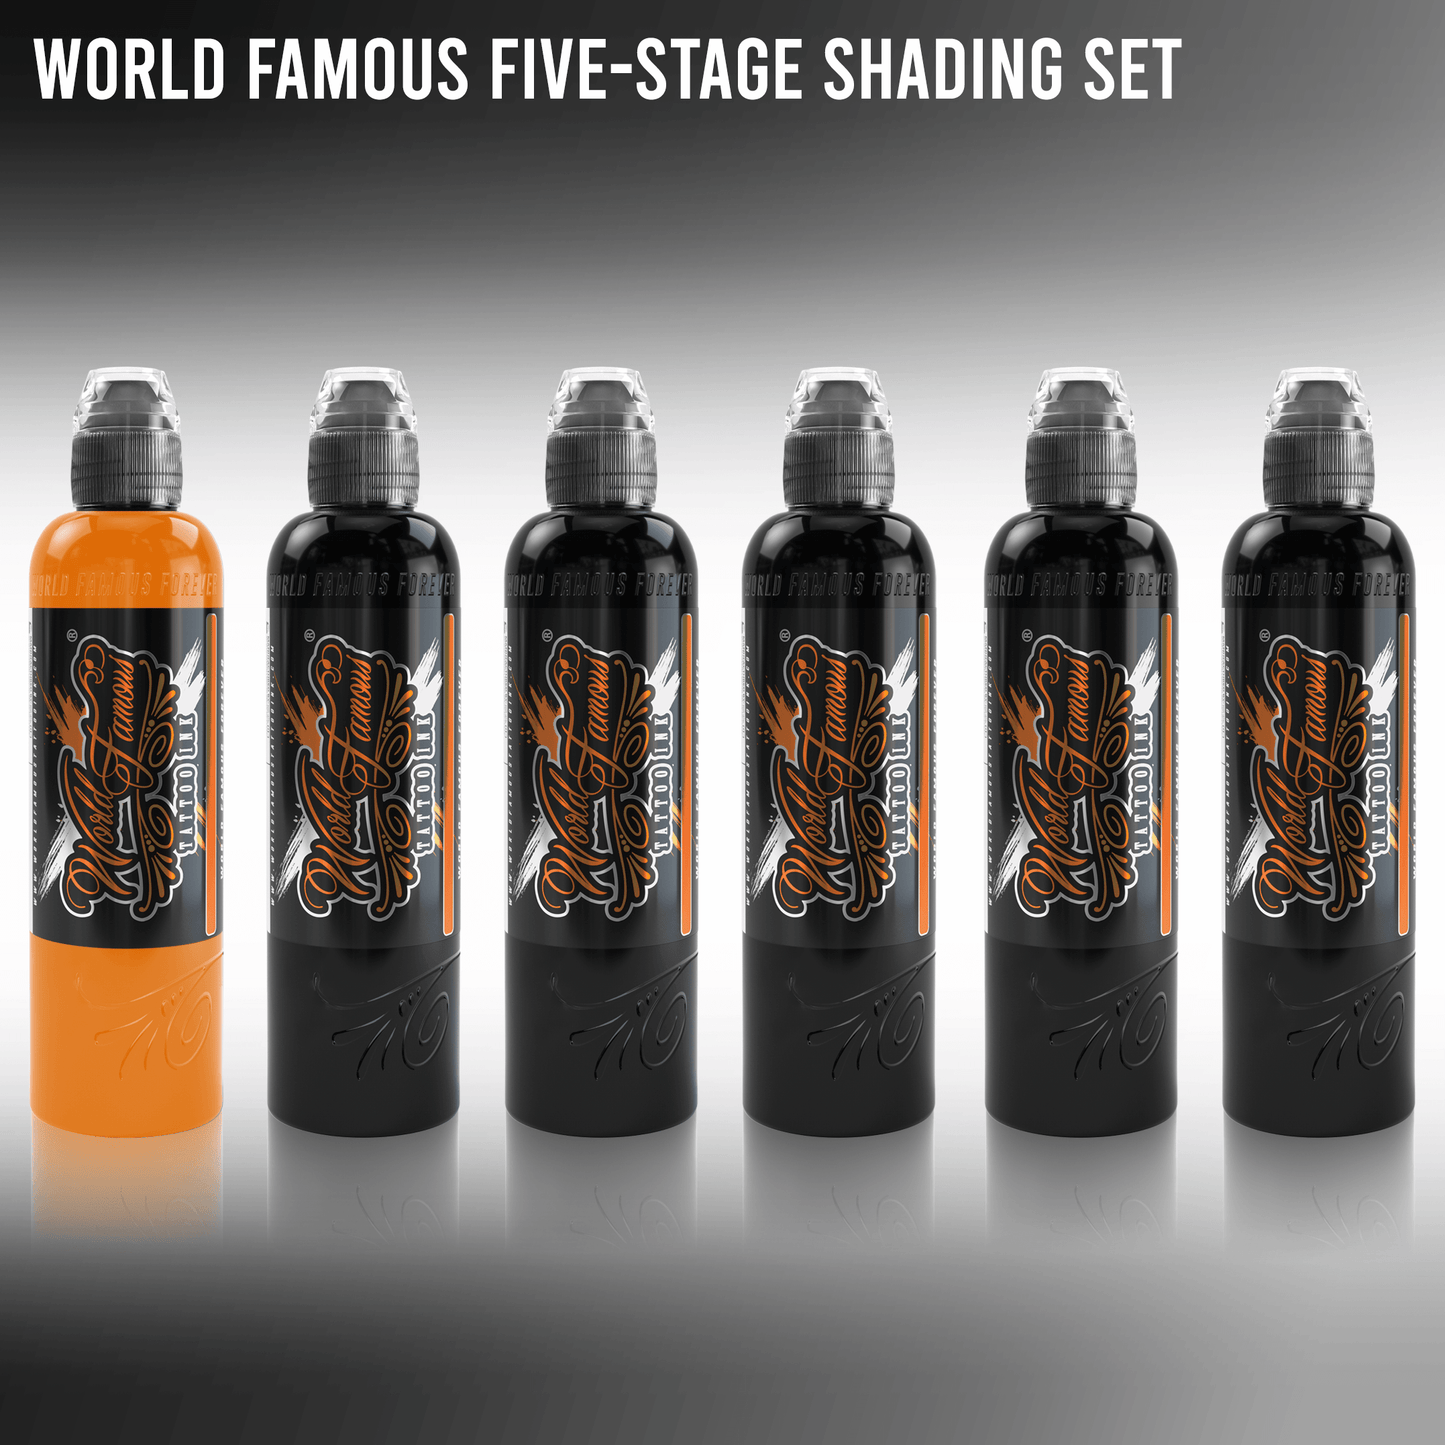 5 Stage Shading Set